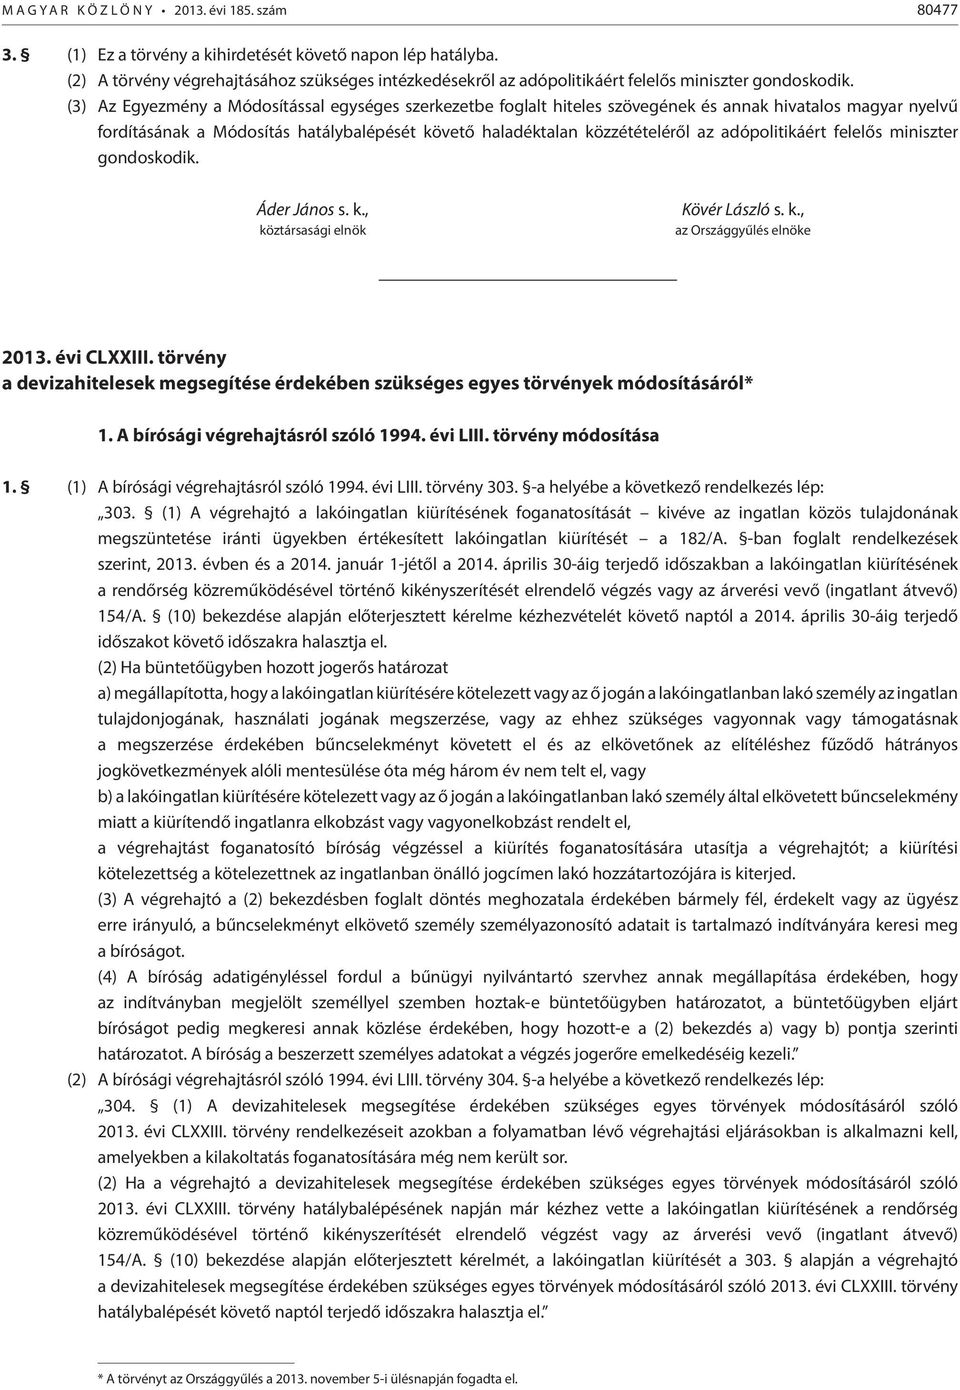 (3) Az Egyezmény a Módosítással egységes szerkezetbe foglalt hiteles szövegének és annak hivatalos magyar nyelvű fordításának a Módosítás hatálybalépését követő haladéktalan közzétételéről az